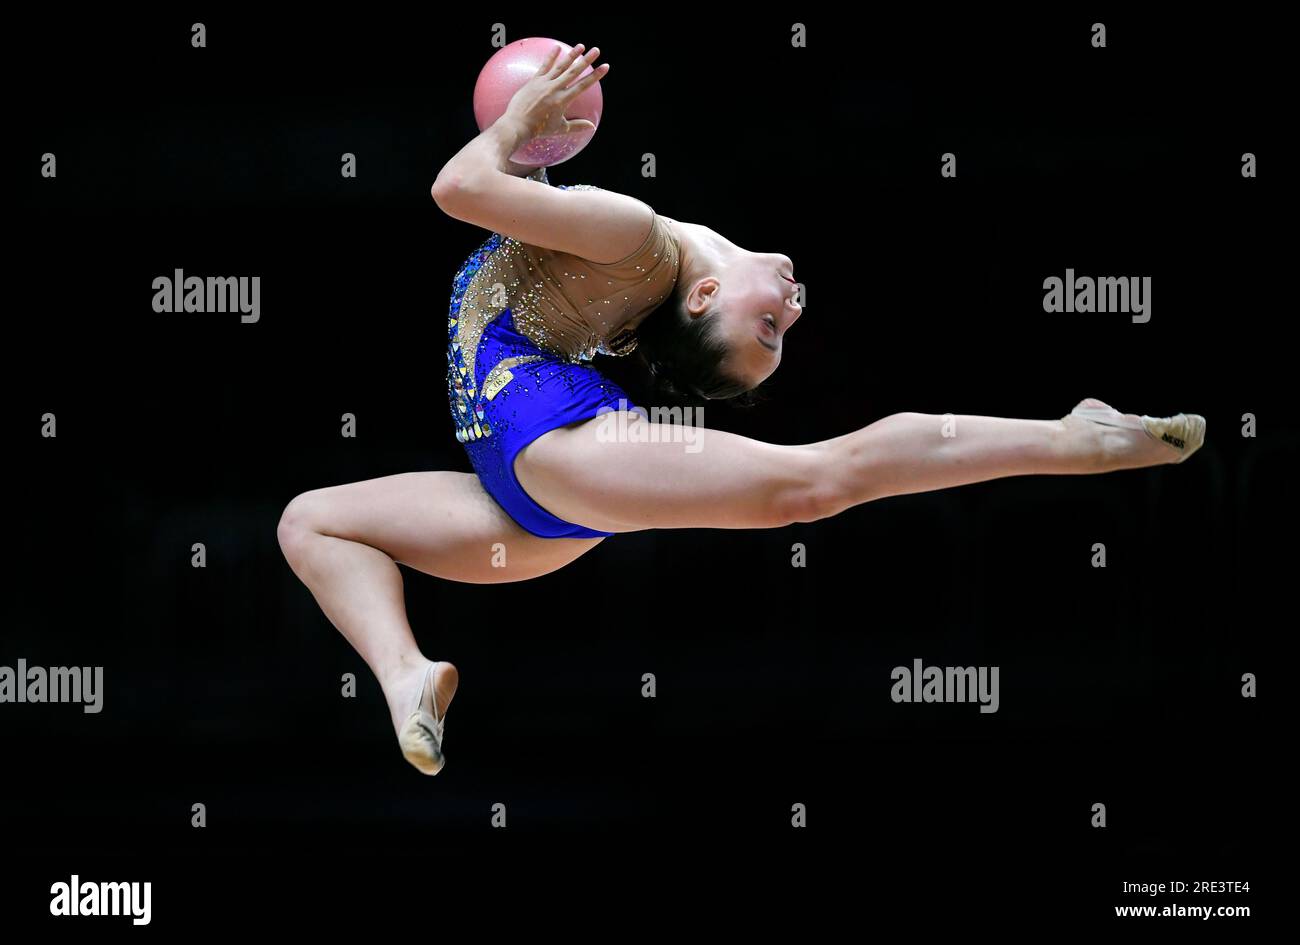 Finale, Deutsche Meisterschaft, Rhythmic Gymnastics All-Around Individuum, PSD Bank Dome Düsseldorf; Pauline Köhler (TV St. Wendel). Stockfoto